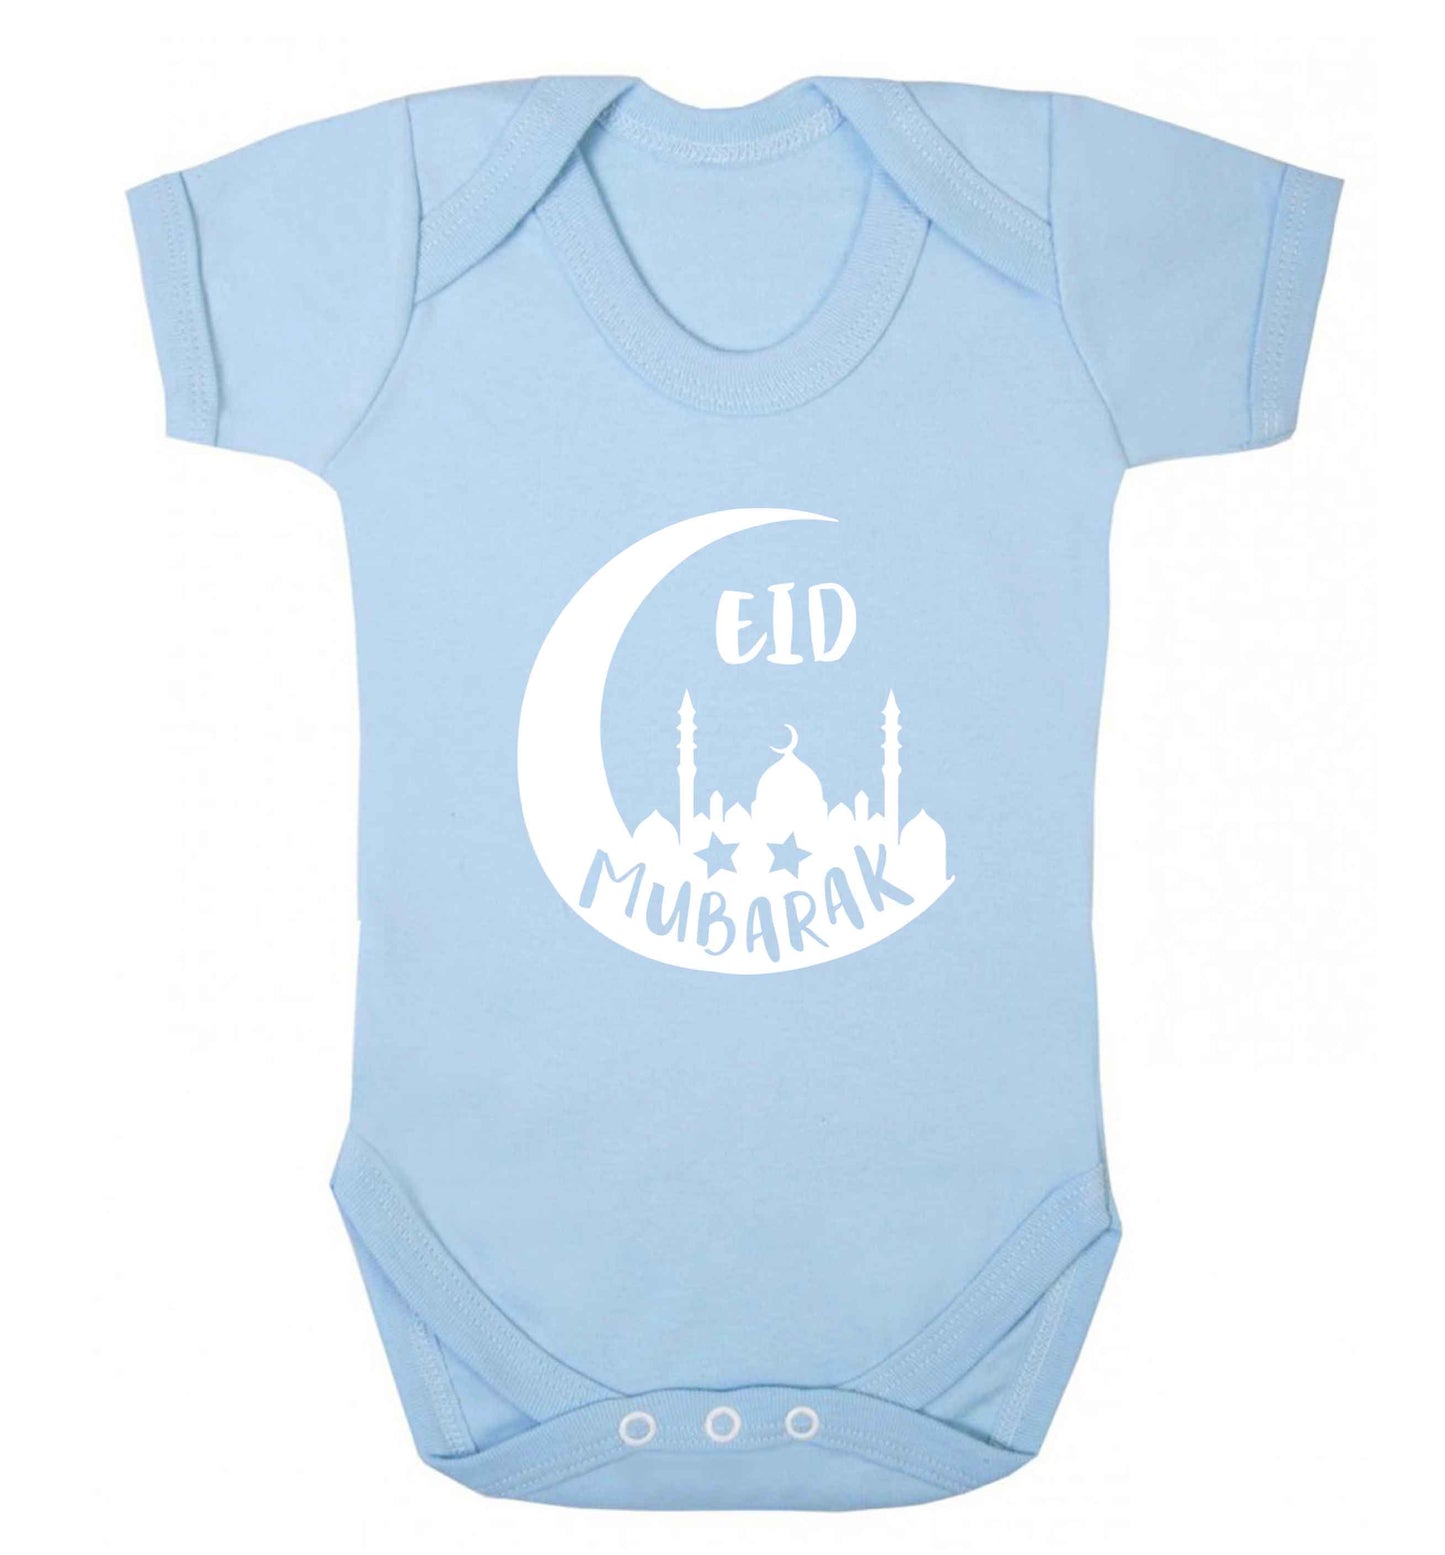 Eid mubarak baby vest pale blue 18-24 months